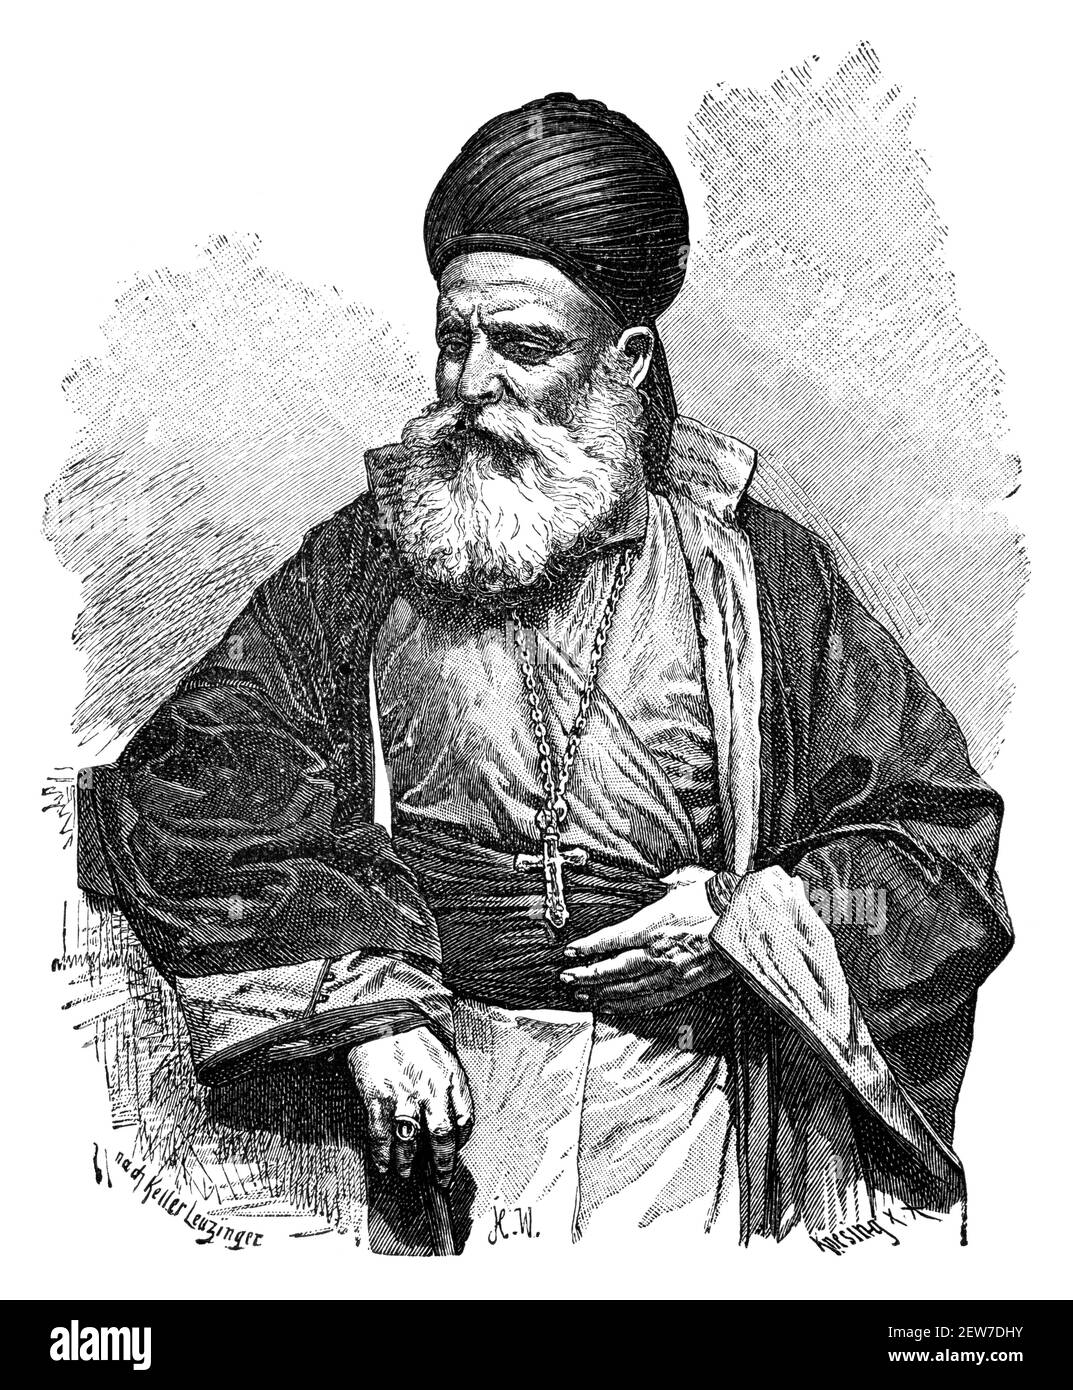 Maronita sacerdote cristiano, Siria. Cultura e storia dell'Asia occidentale. Immagine in bianco e nero d'epoca. 19 ° secolo. Foto Stock